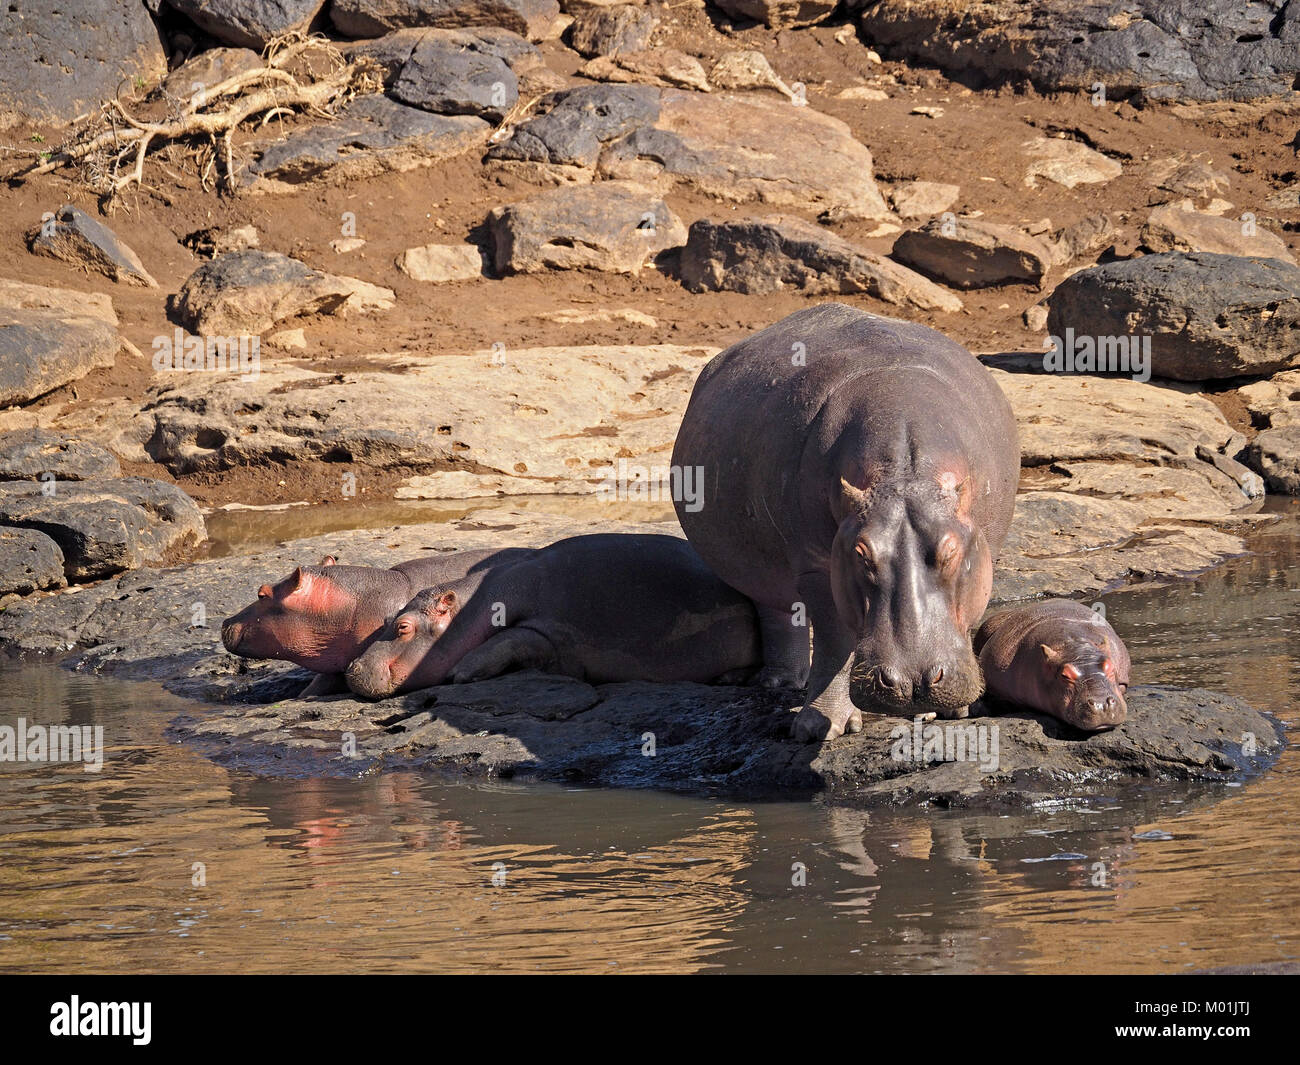 Adultes permanent Hippopotame (Hippopotamus amphibius), avec trois jeunes couché de soleil sur les rives de la rivière Mara dans le Masai Mara, Kenya Afrique Associations Banque D'Images